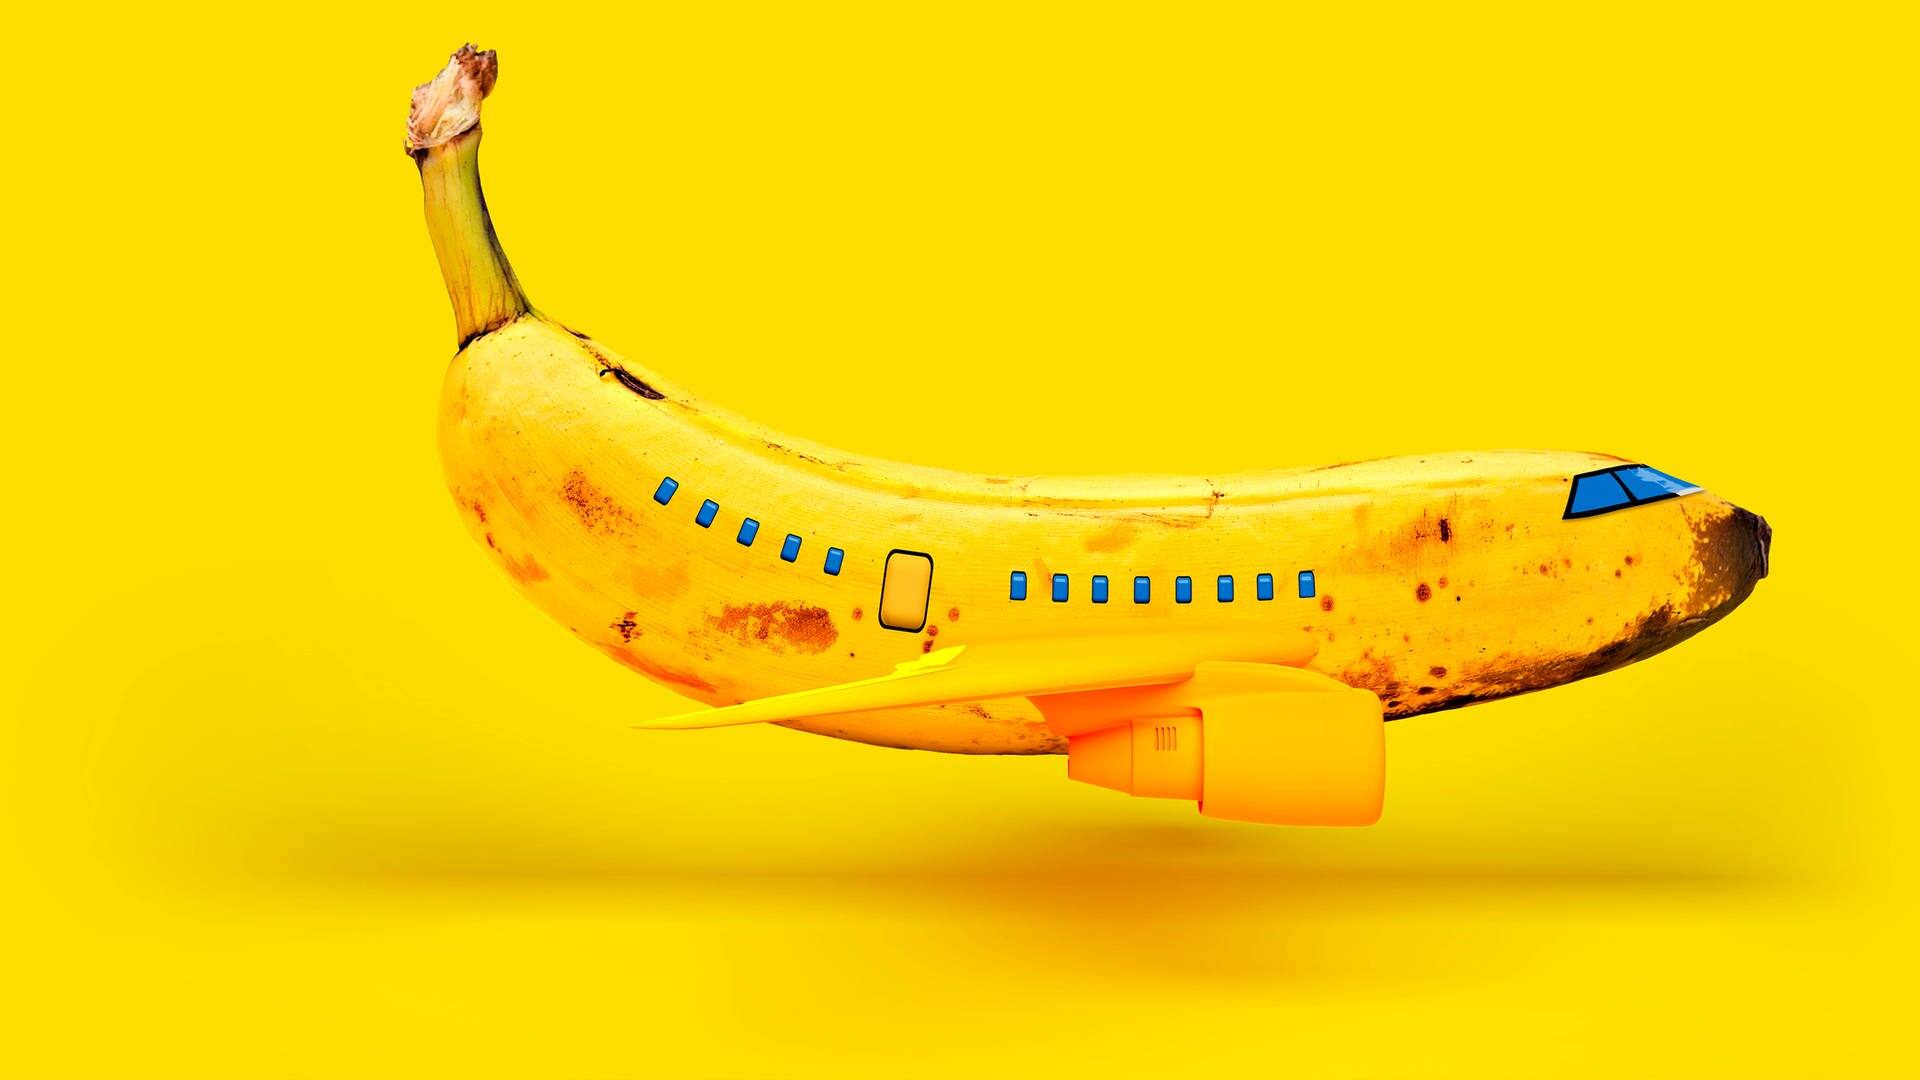 Flugzeug dargestellt als Banane (Foto: IMAGO, IMAGO / Westend61)